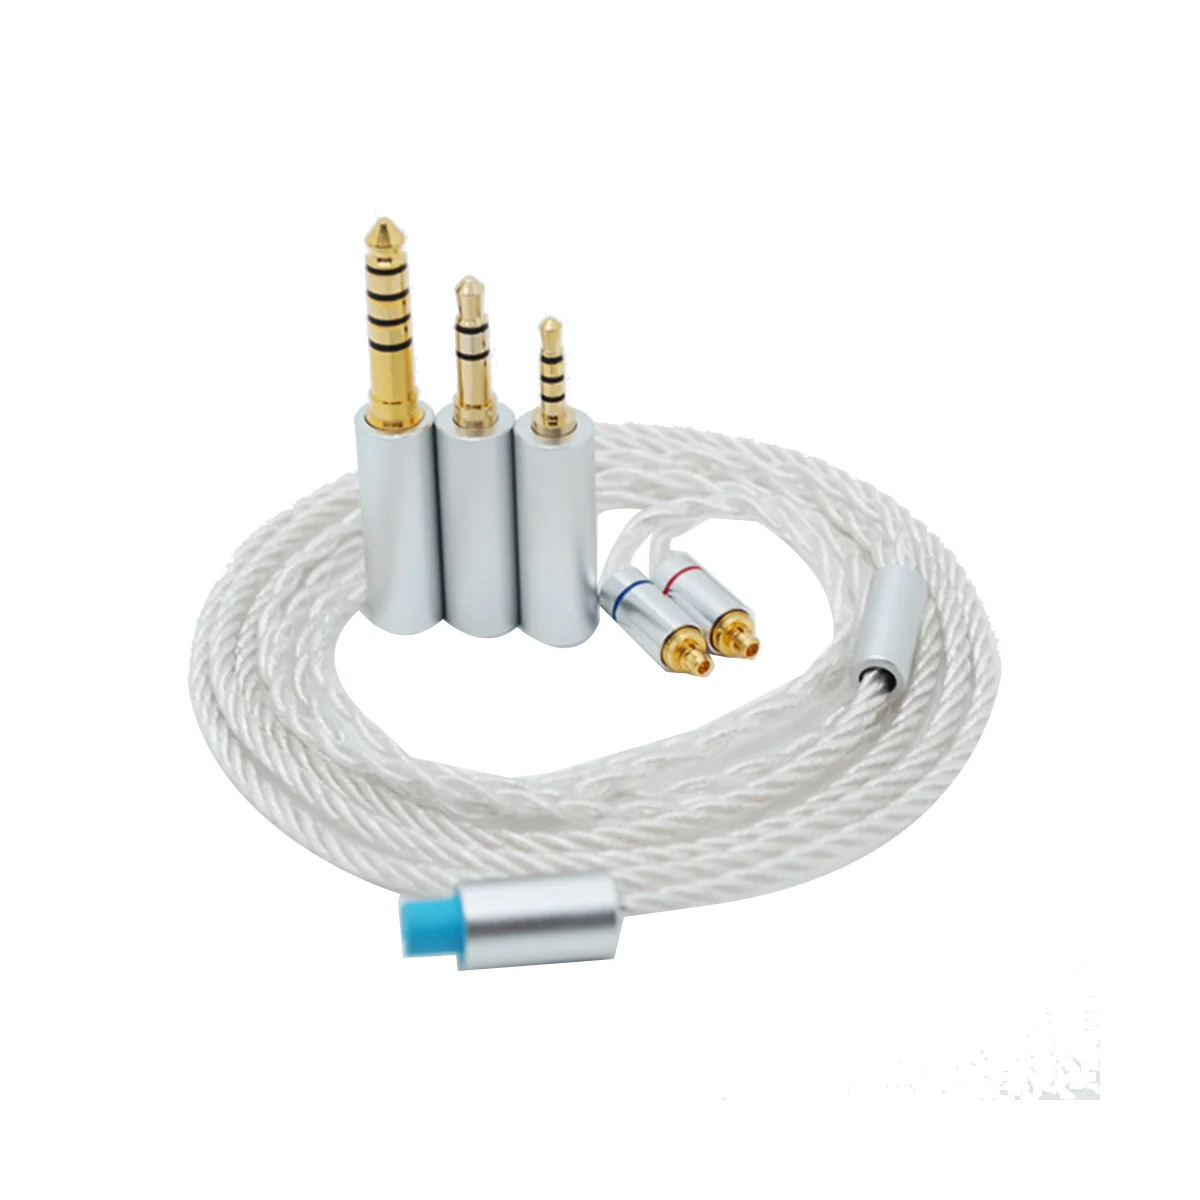 

Обновленный кабель для наушников 3 в 1 посеребренный для IE300 IE600 IE900 MMCX прозрачный